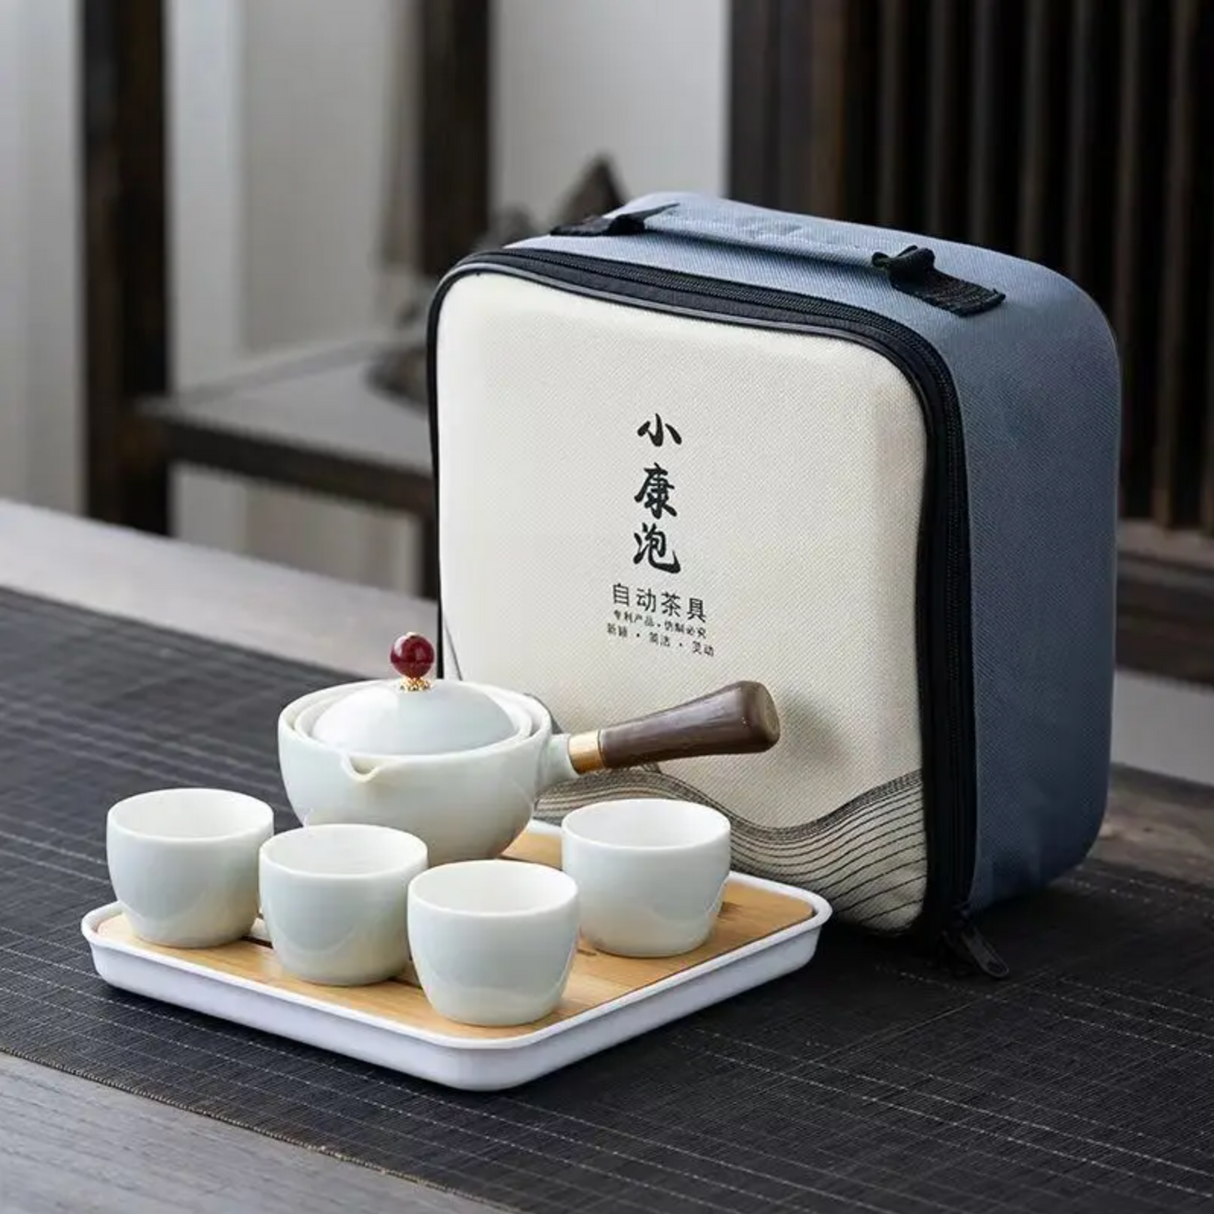 Service à thé japonais portatif blanc couleur unie